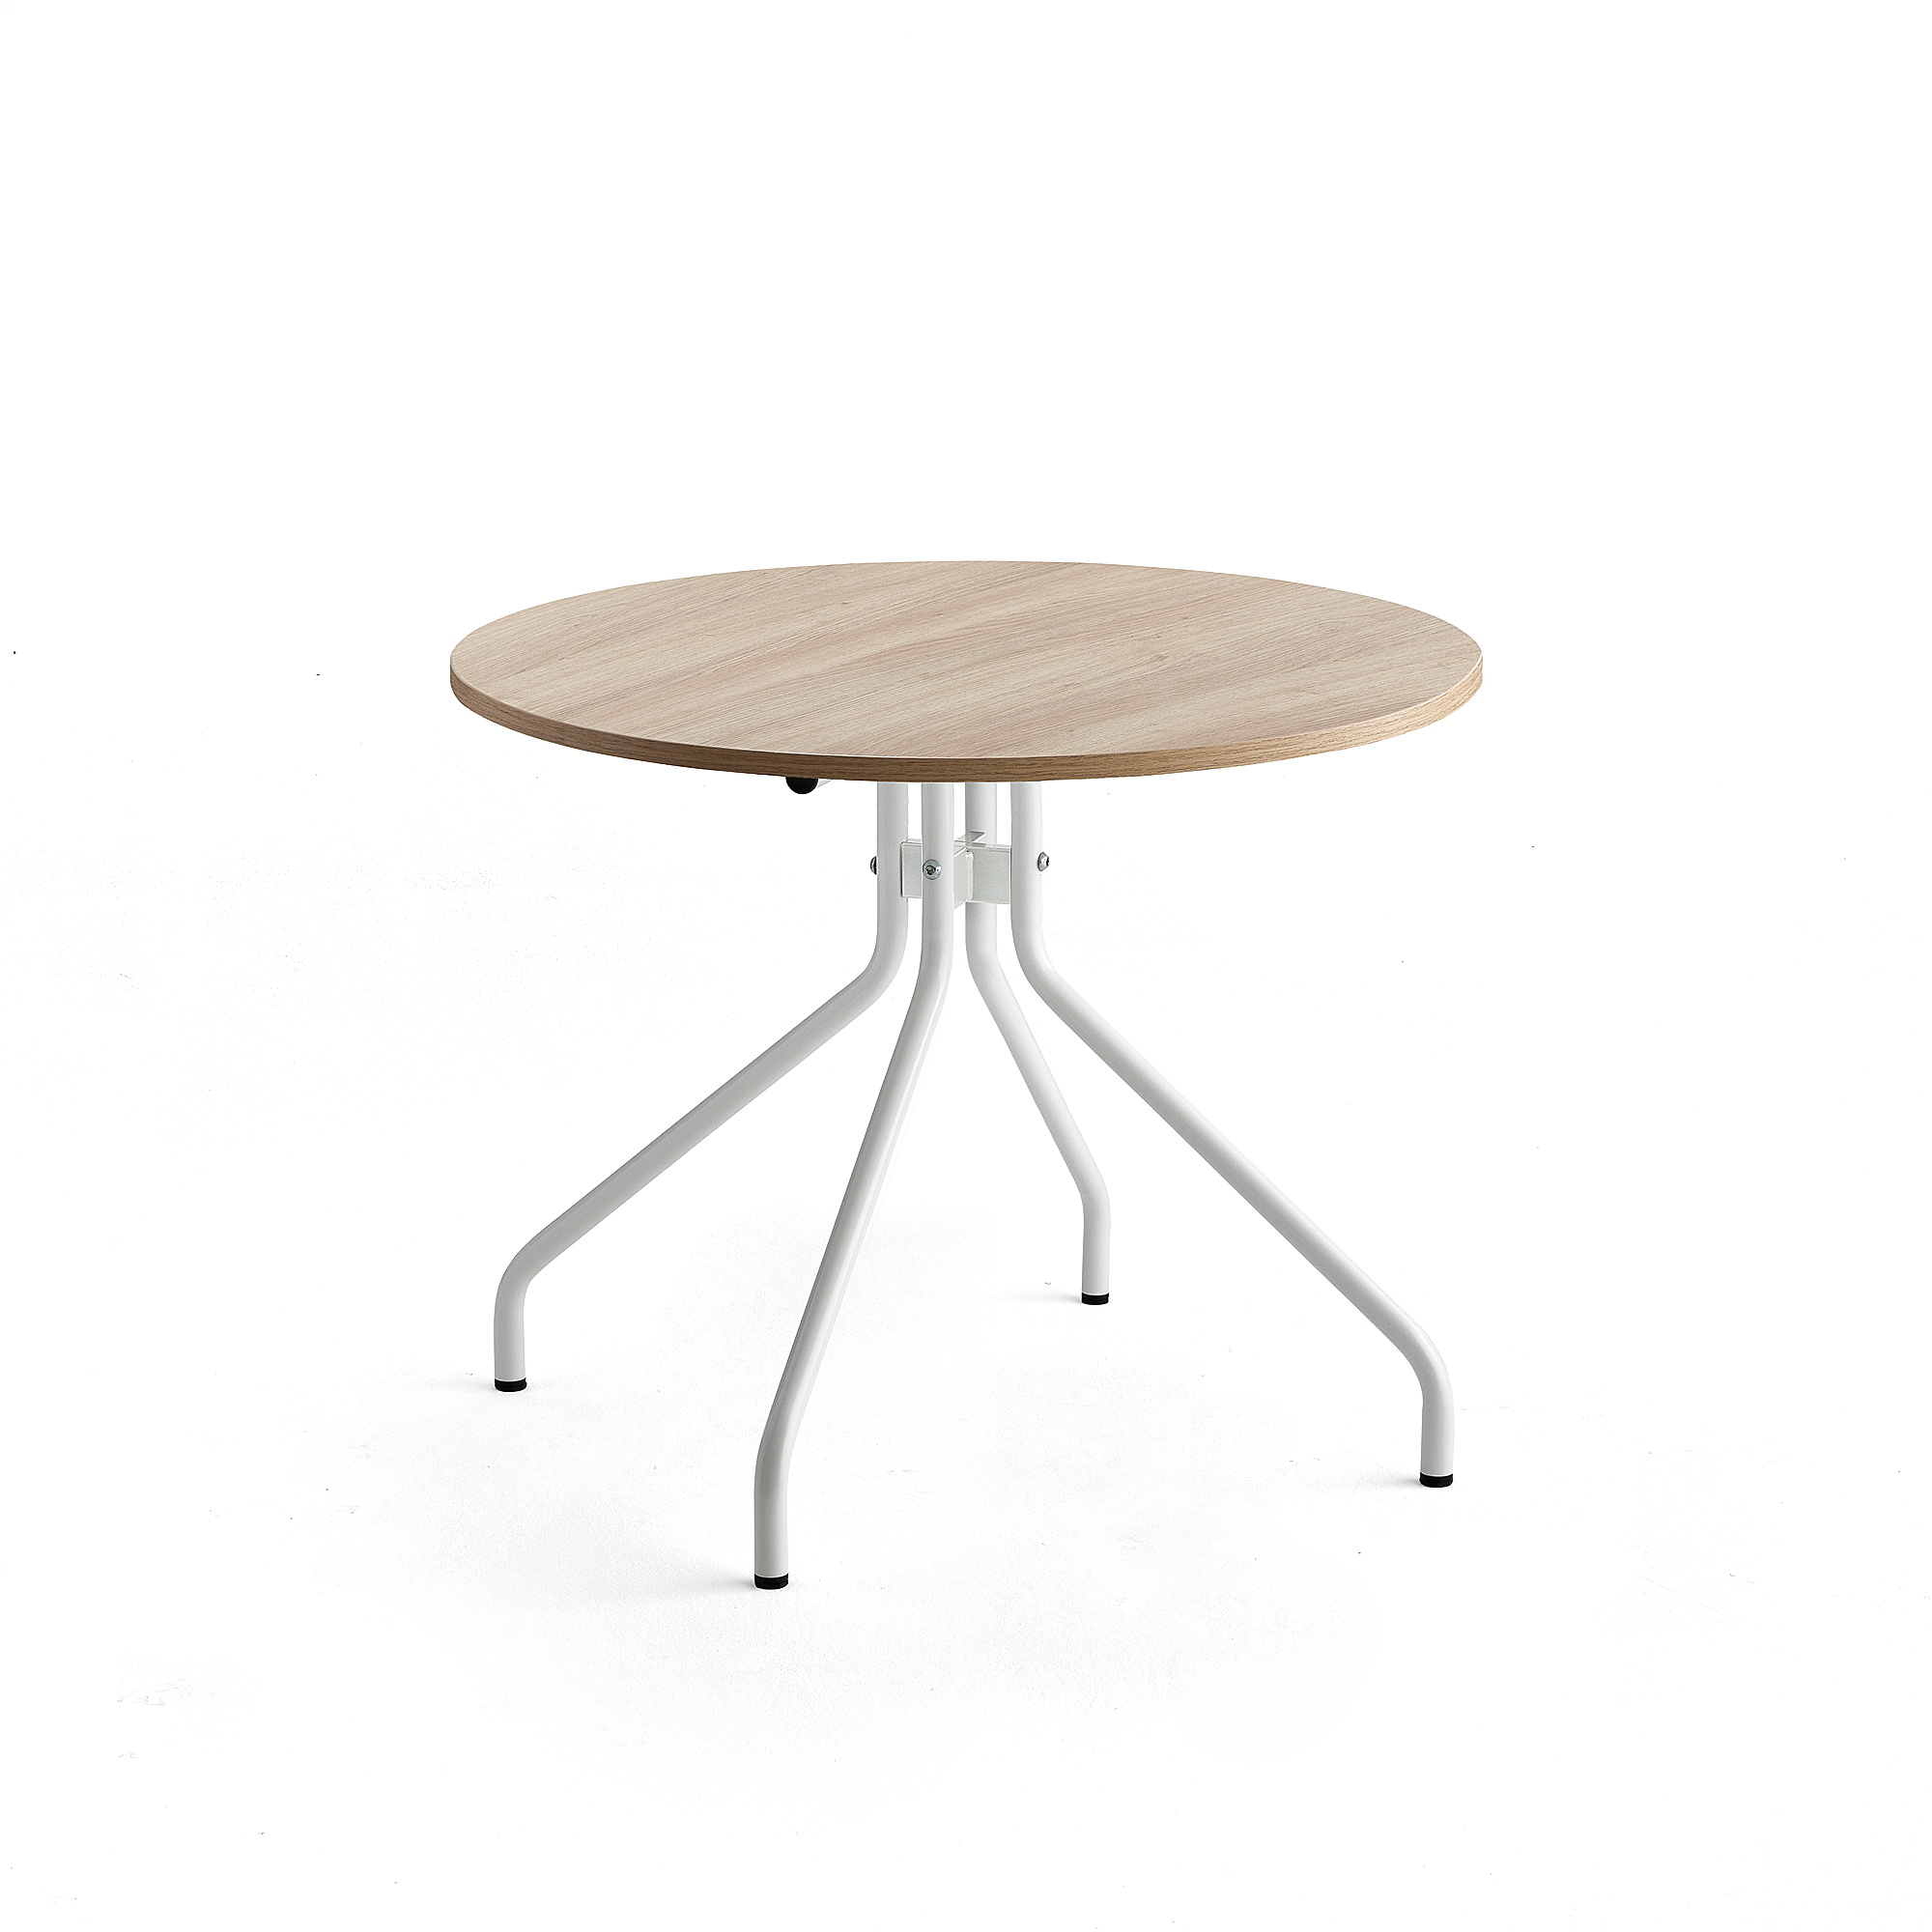 Stůl AROUND, Ø900 mm, bílá, dub